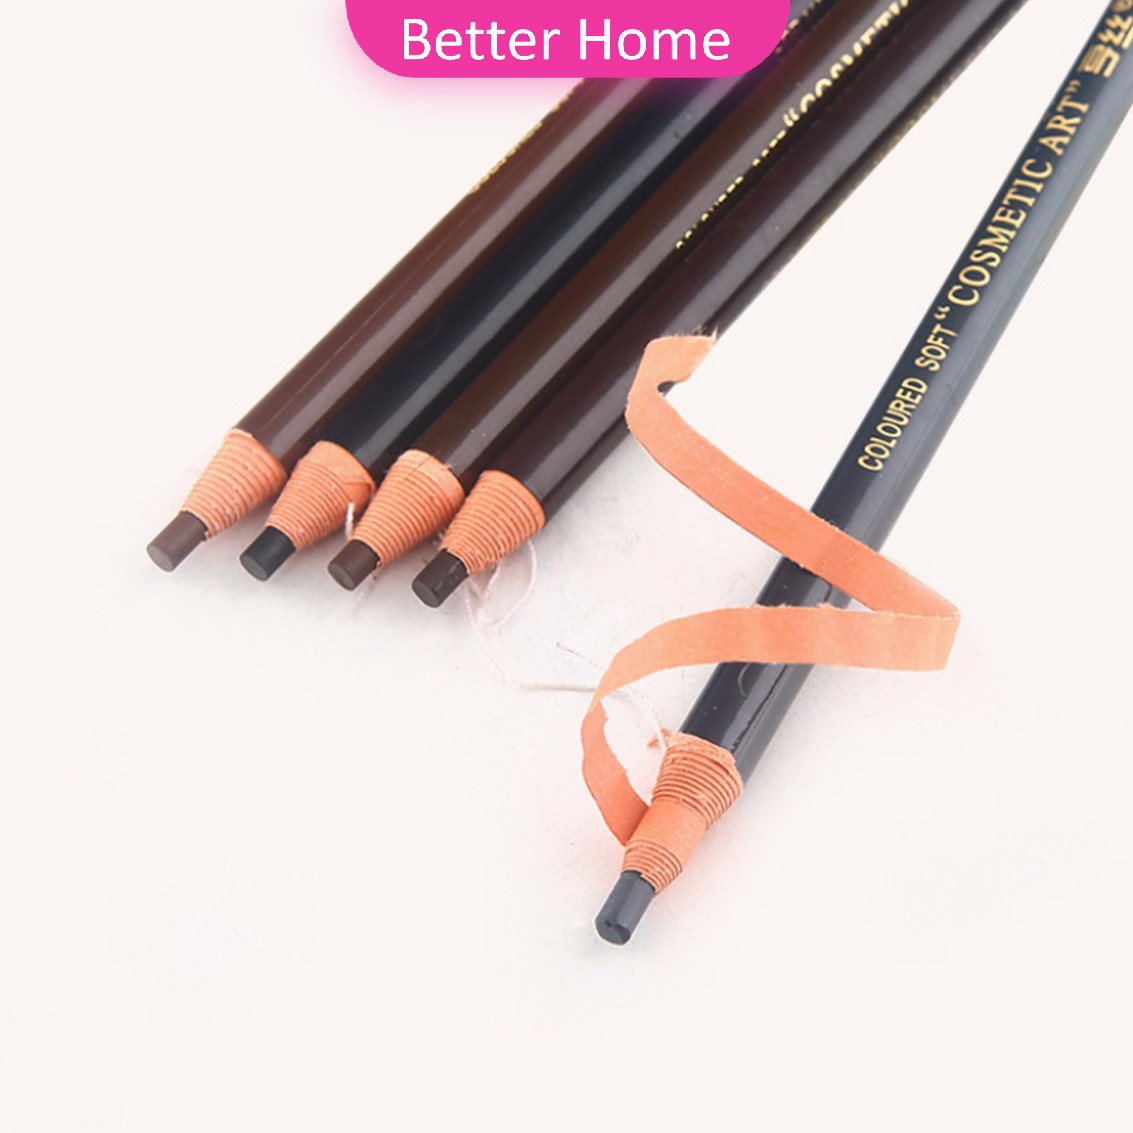 ดินสอเขียนคิ้ว ติดทนนาน 1 ชิ้น - ดินสอเขียนคิ้ว กันน้ำ น้ำตาล 03  Eye Pencil 1 PCS